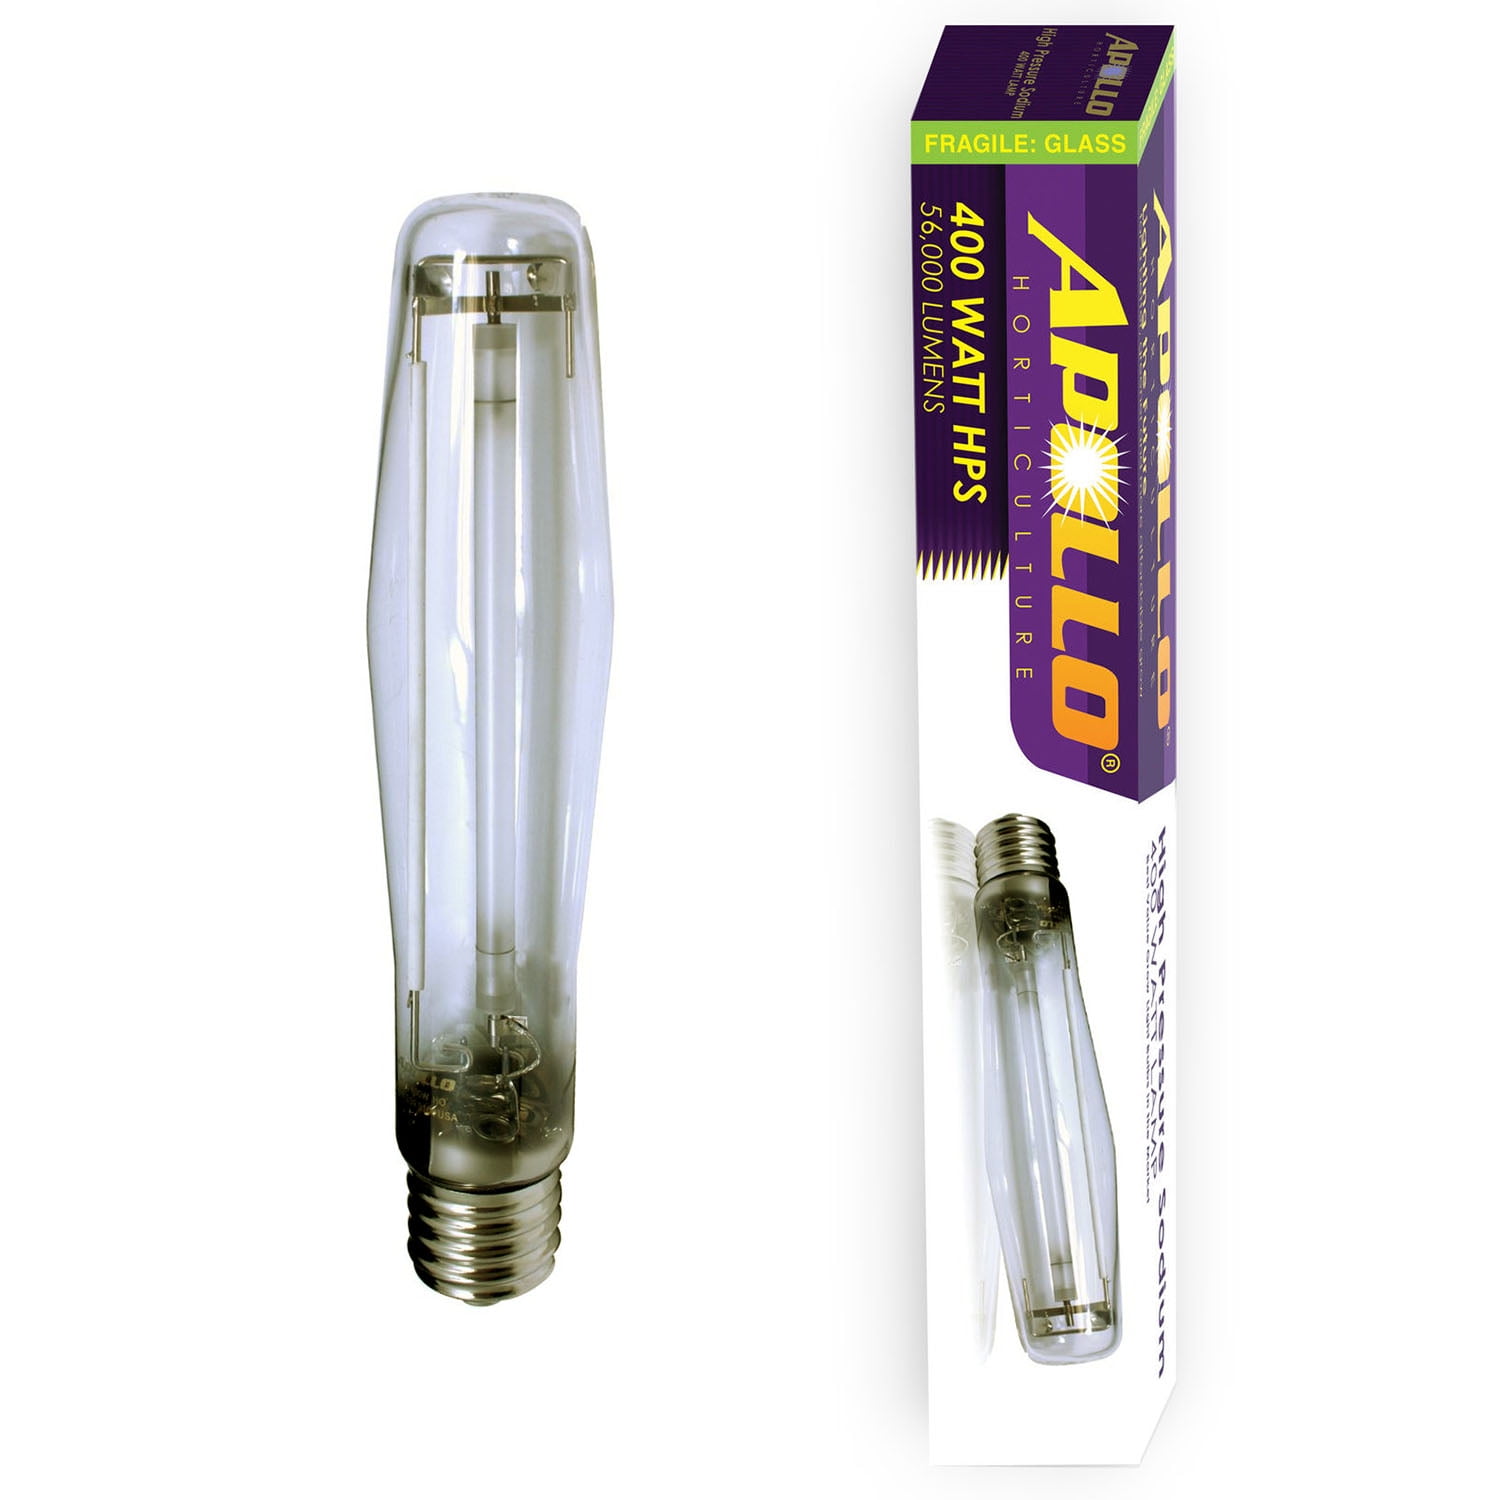 Enhanced Performance MH 400W Lamps bloom flowering garden vegetation bulb 